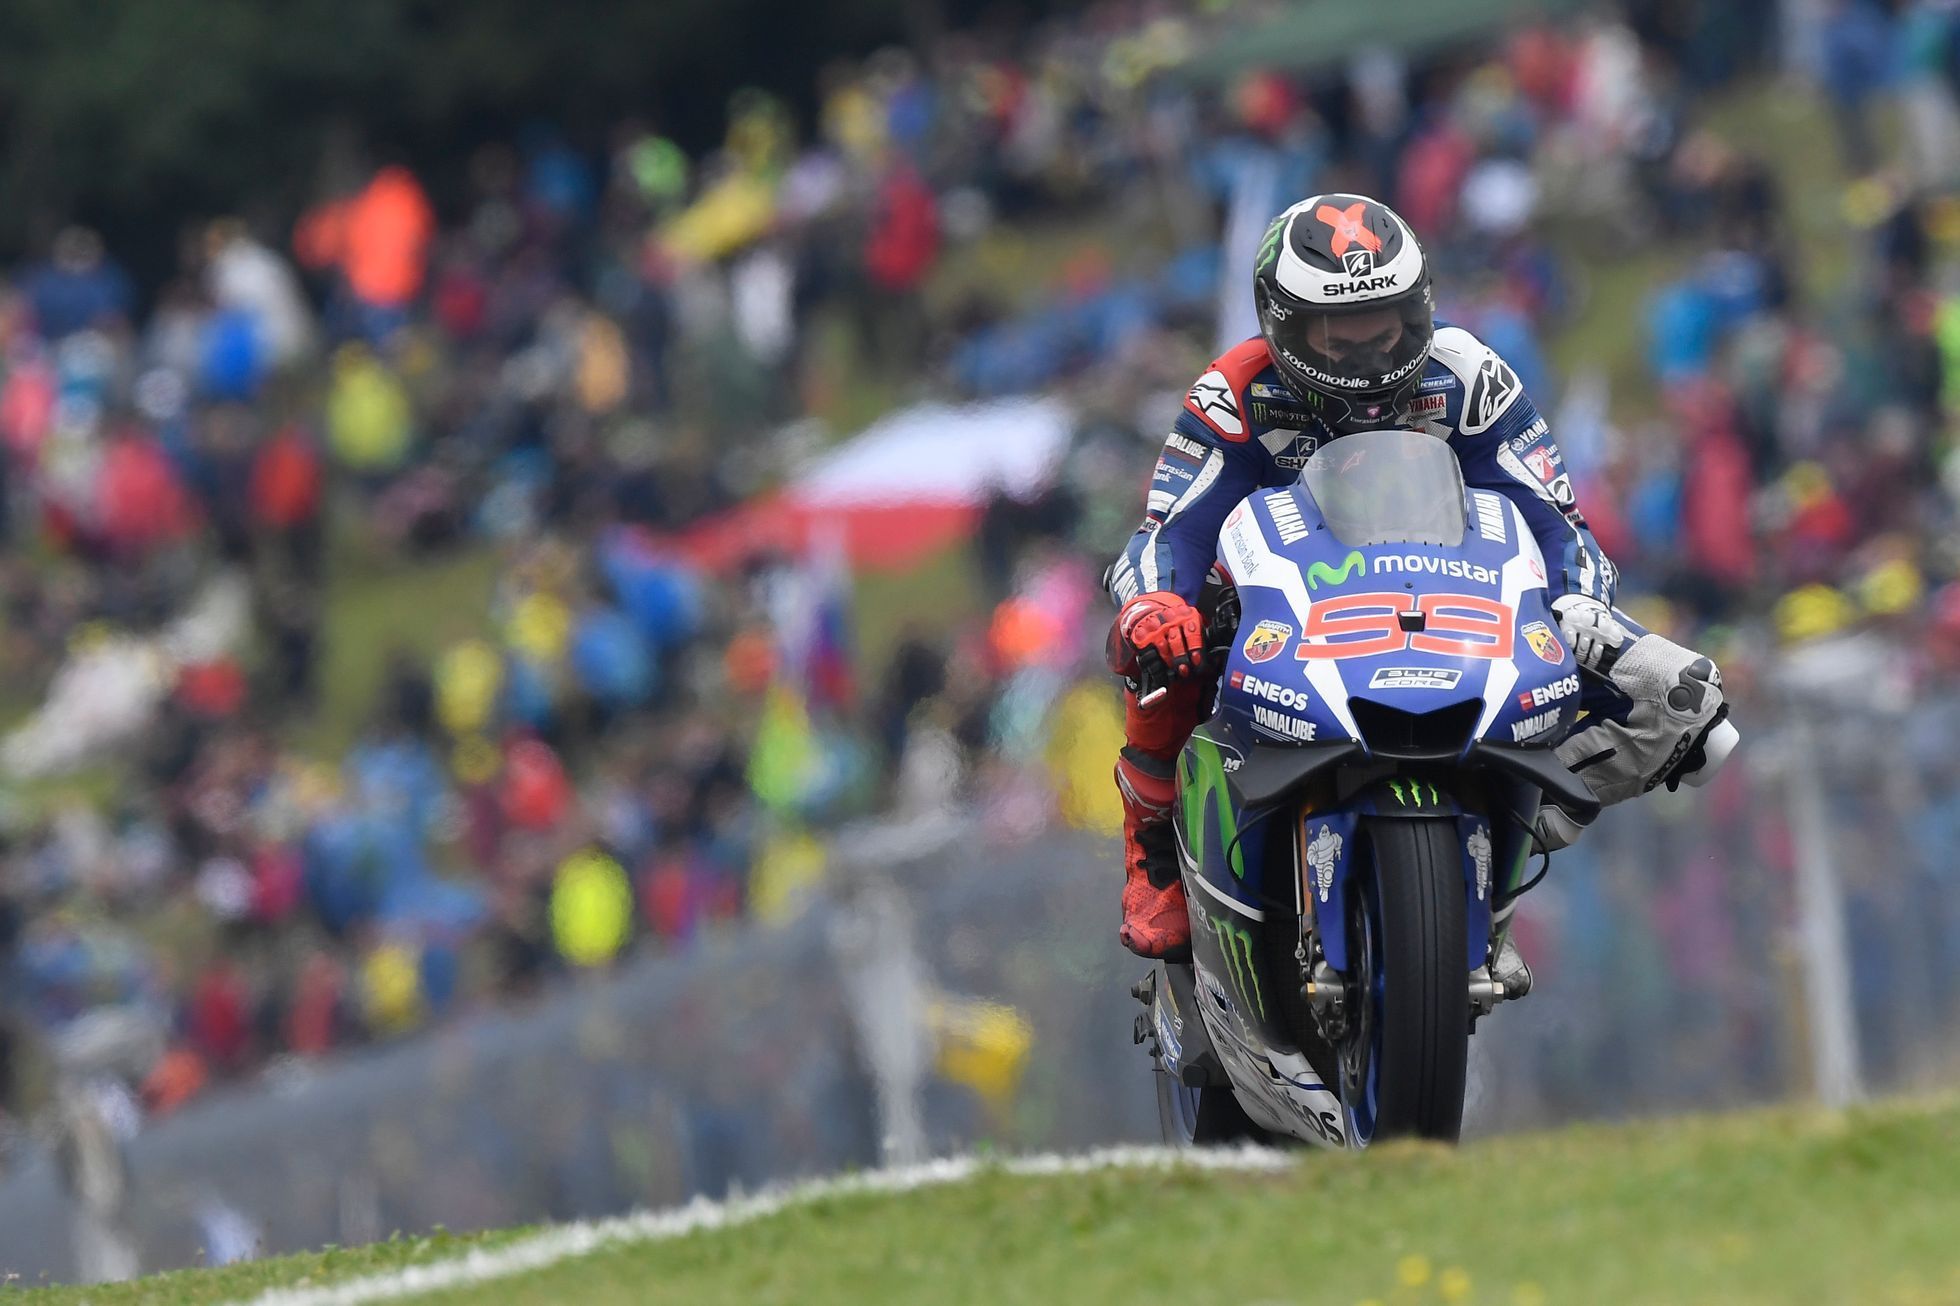 VC České republiky 2016, MotoGP: Jorge Lorenzo, Yamaha